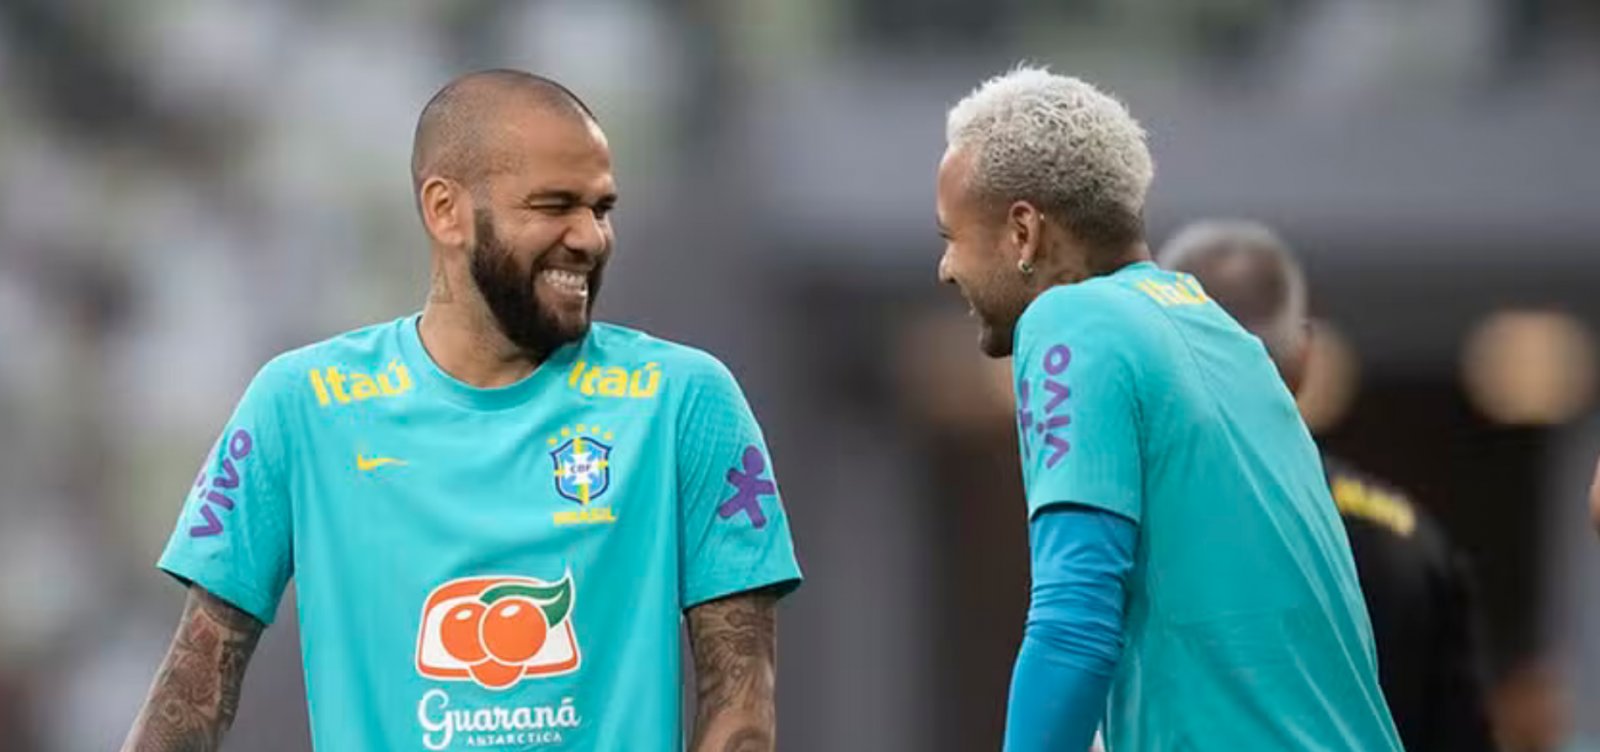 Daniel Alves vai recorrer ao pai de Neymar para pagar fiança, diz jornal